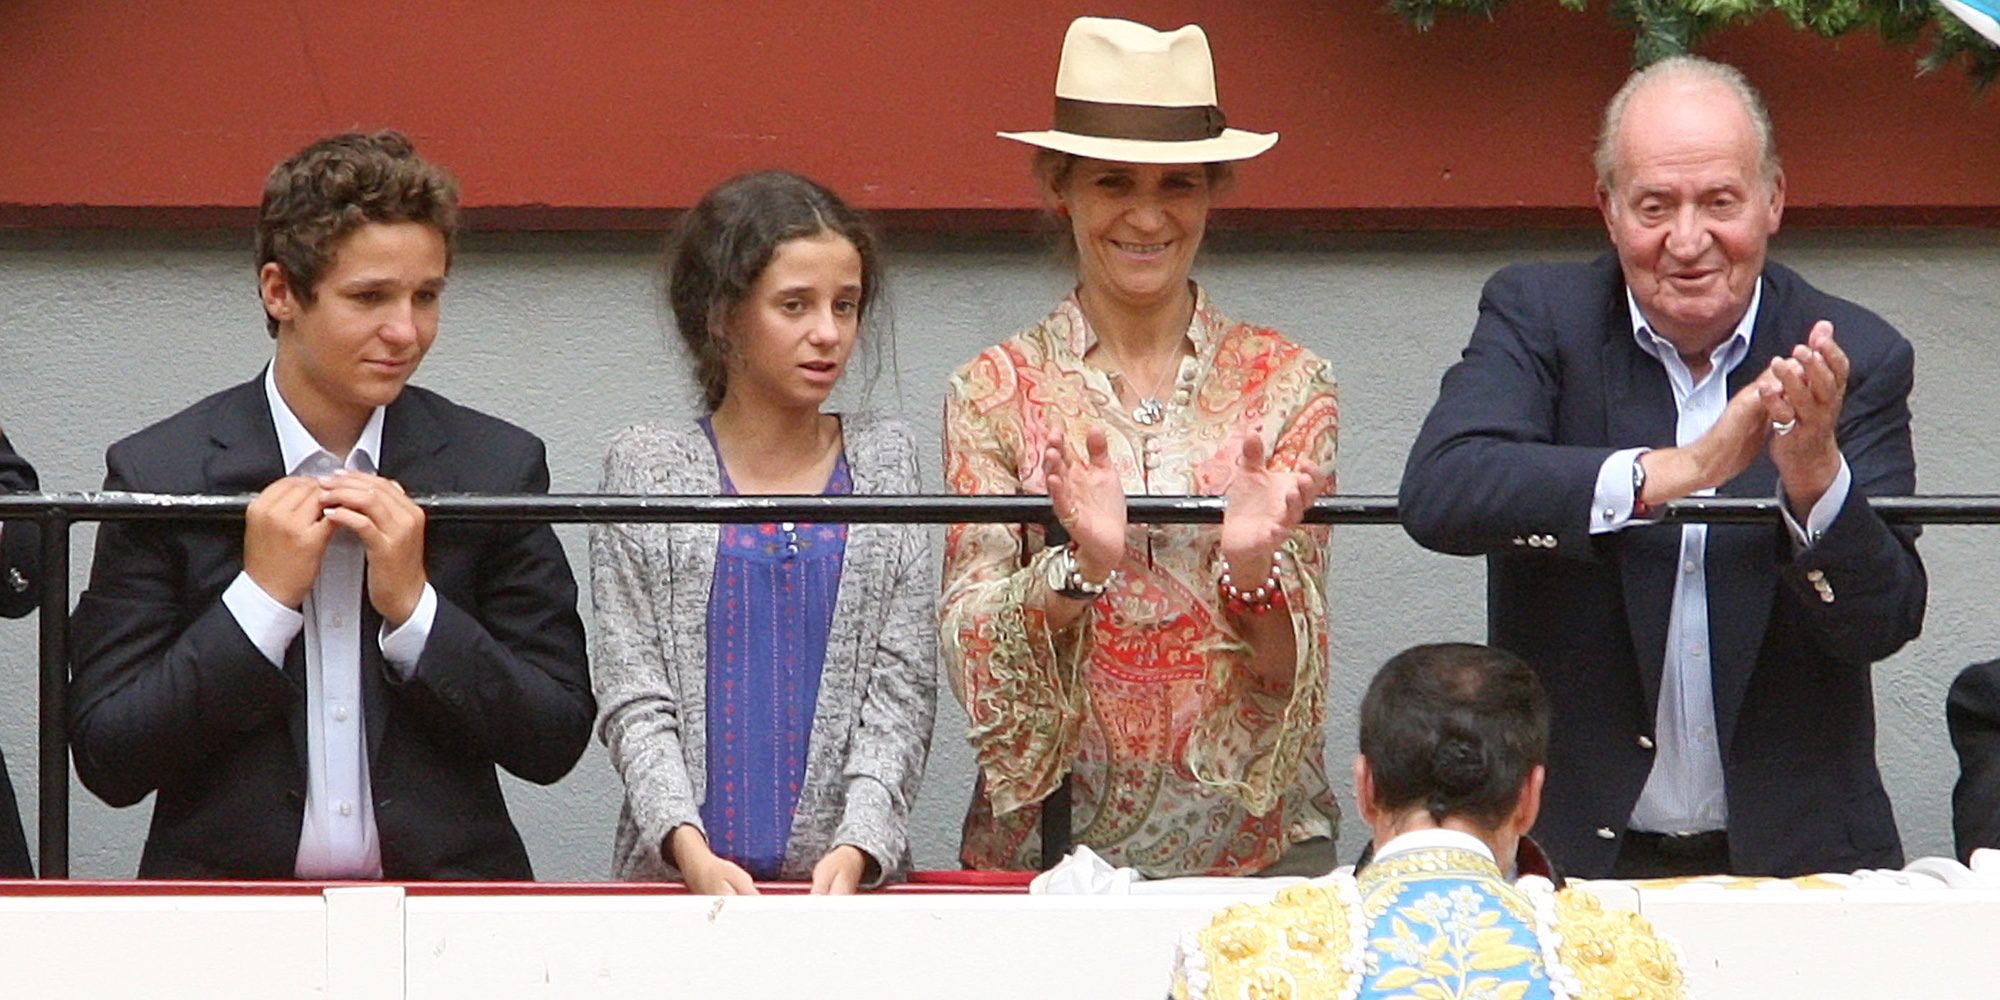 El Rey Juan Carlos, la Infanta Elena, Froilán y Victoria: menú de lujo y corrida de toros en San Sebastián